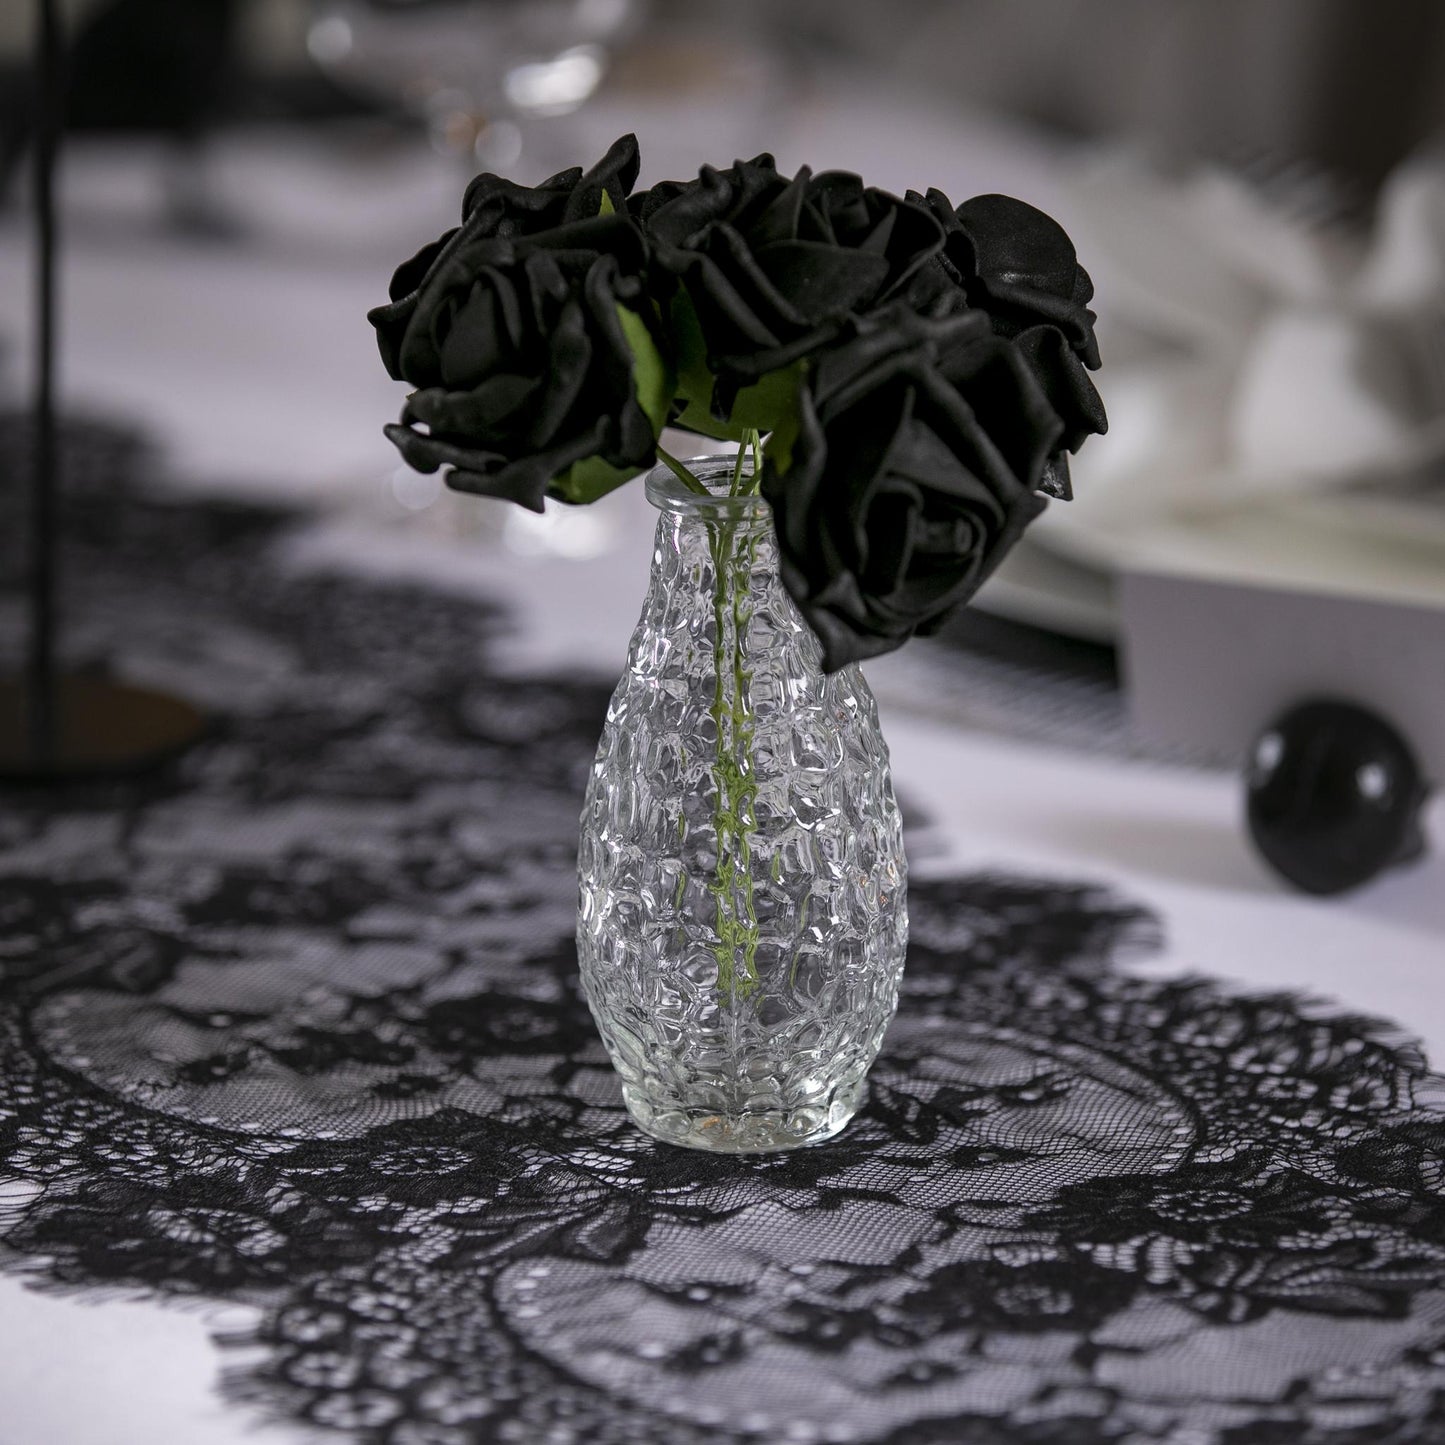 Black Rose Bouquet - Tableday